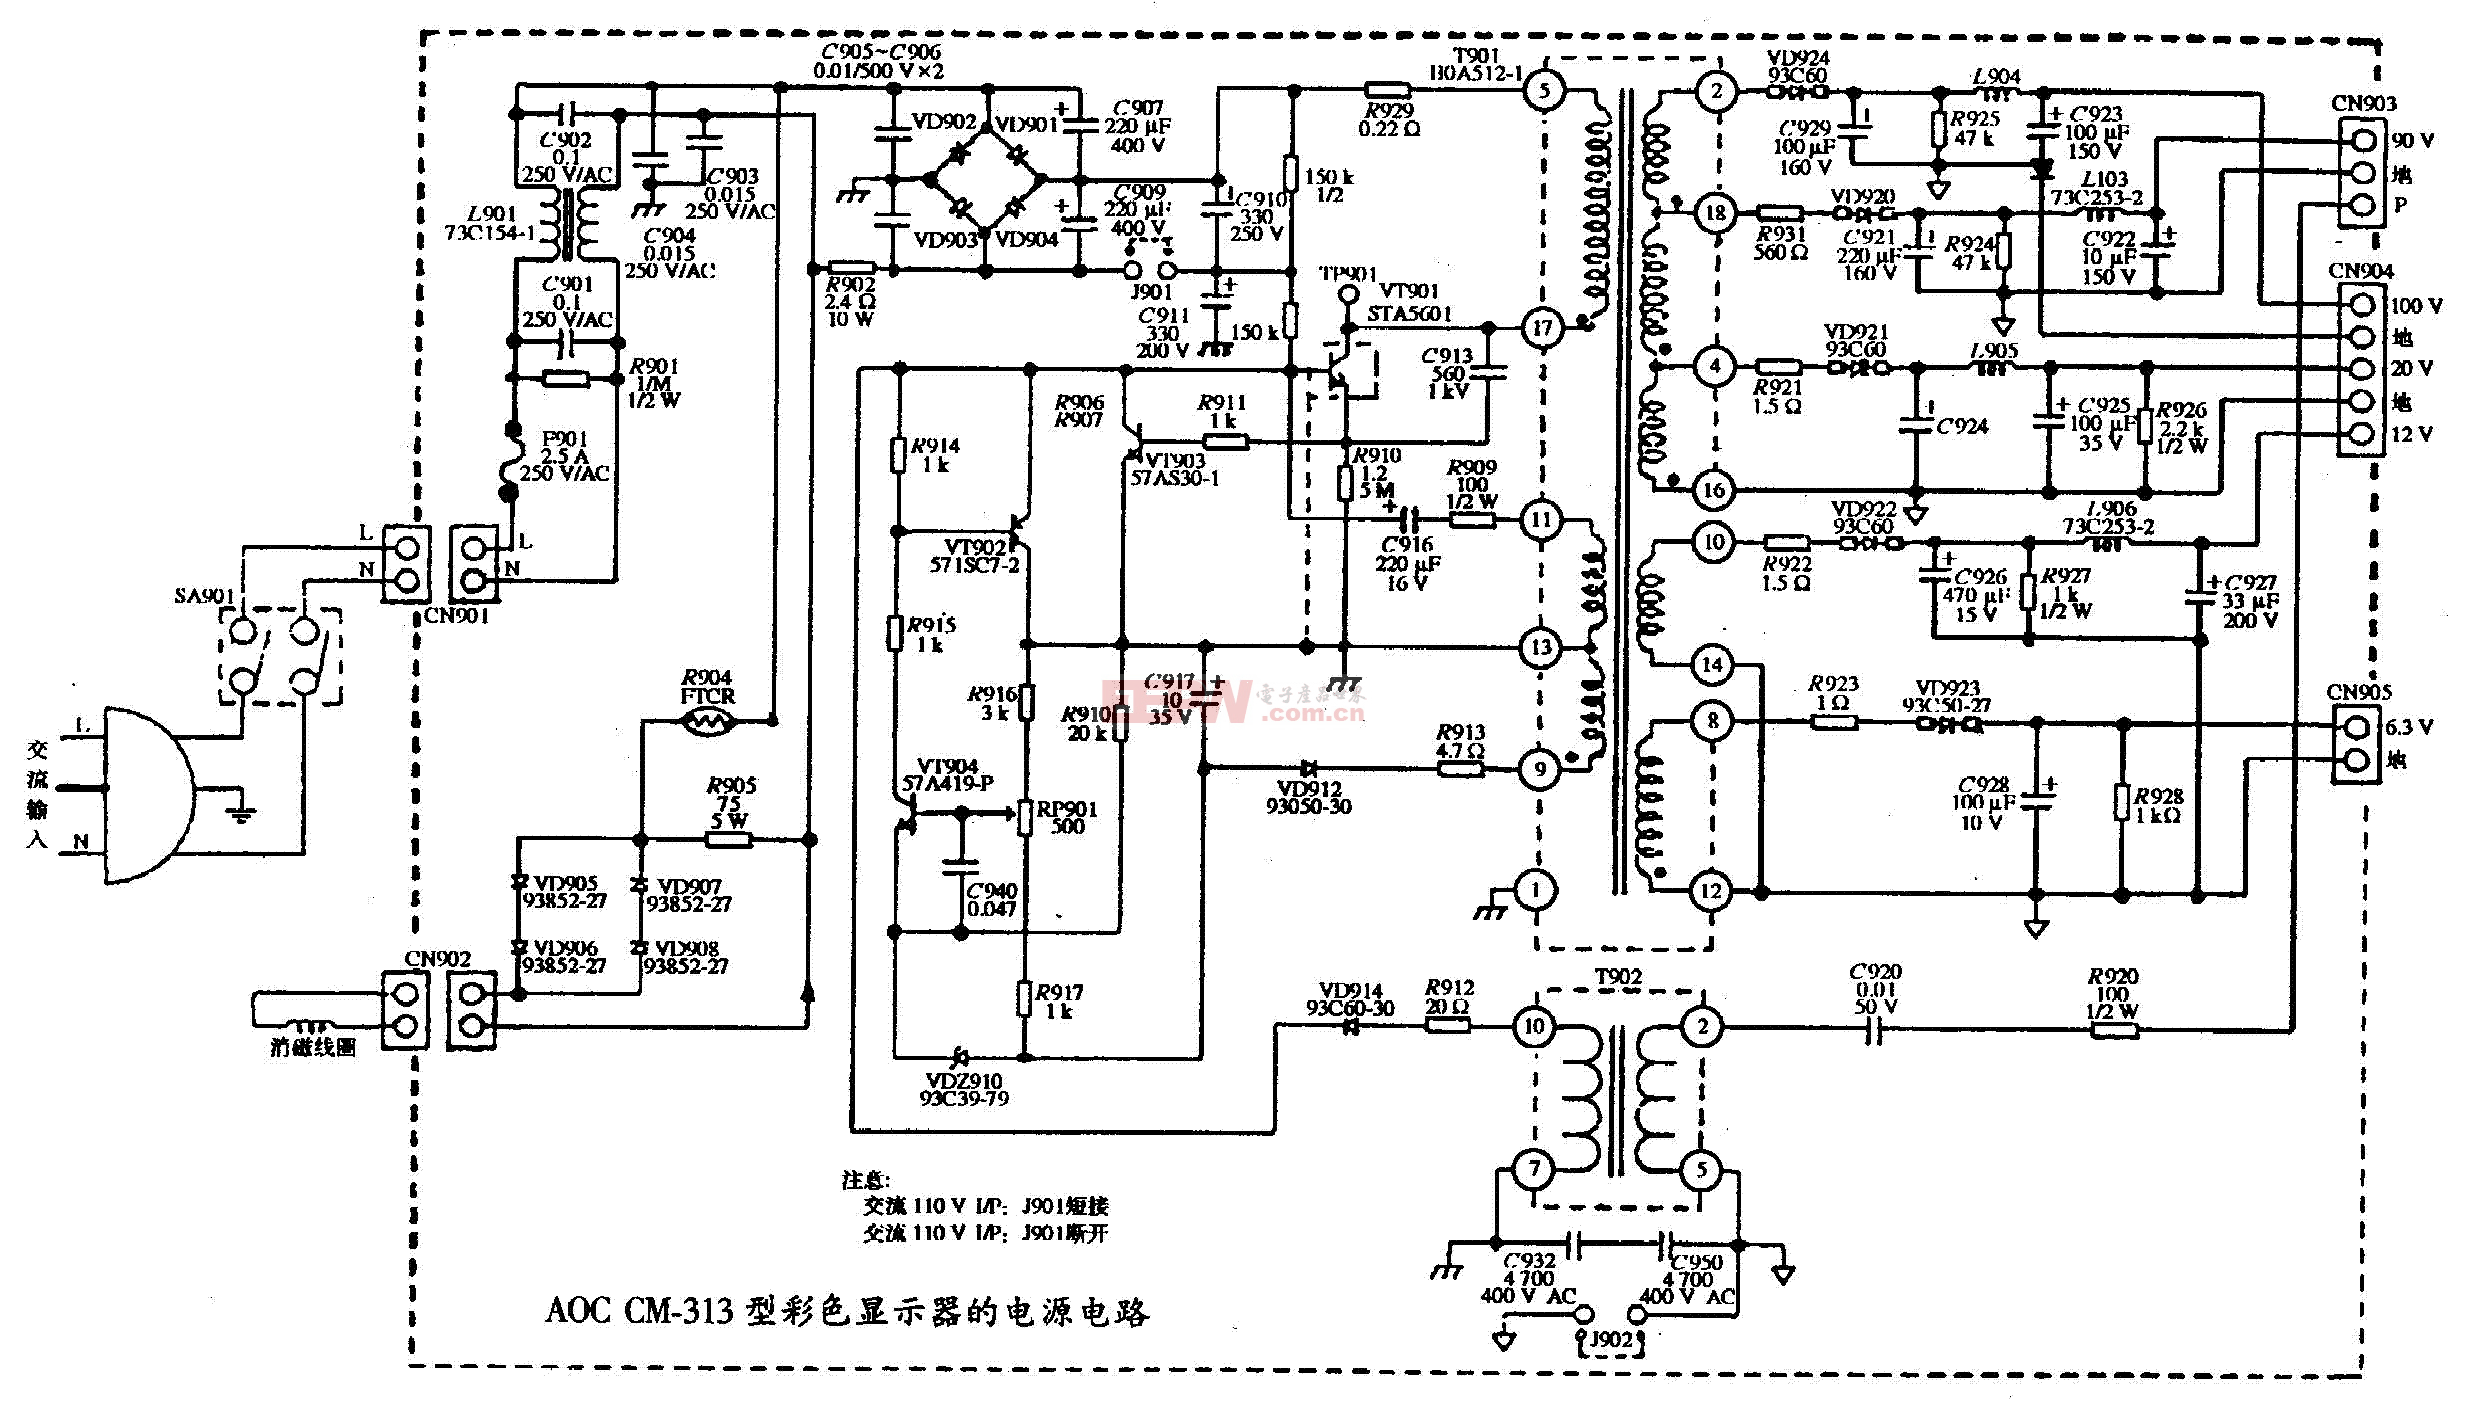 2、AOC CM-313型彩色显示器的电源电路图